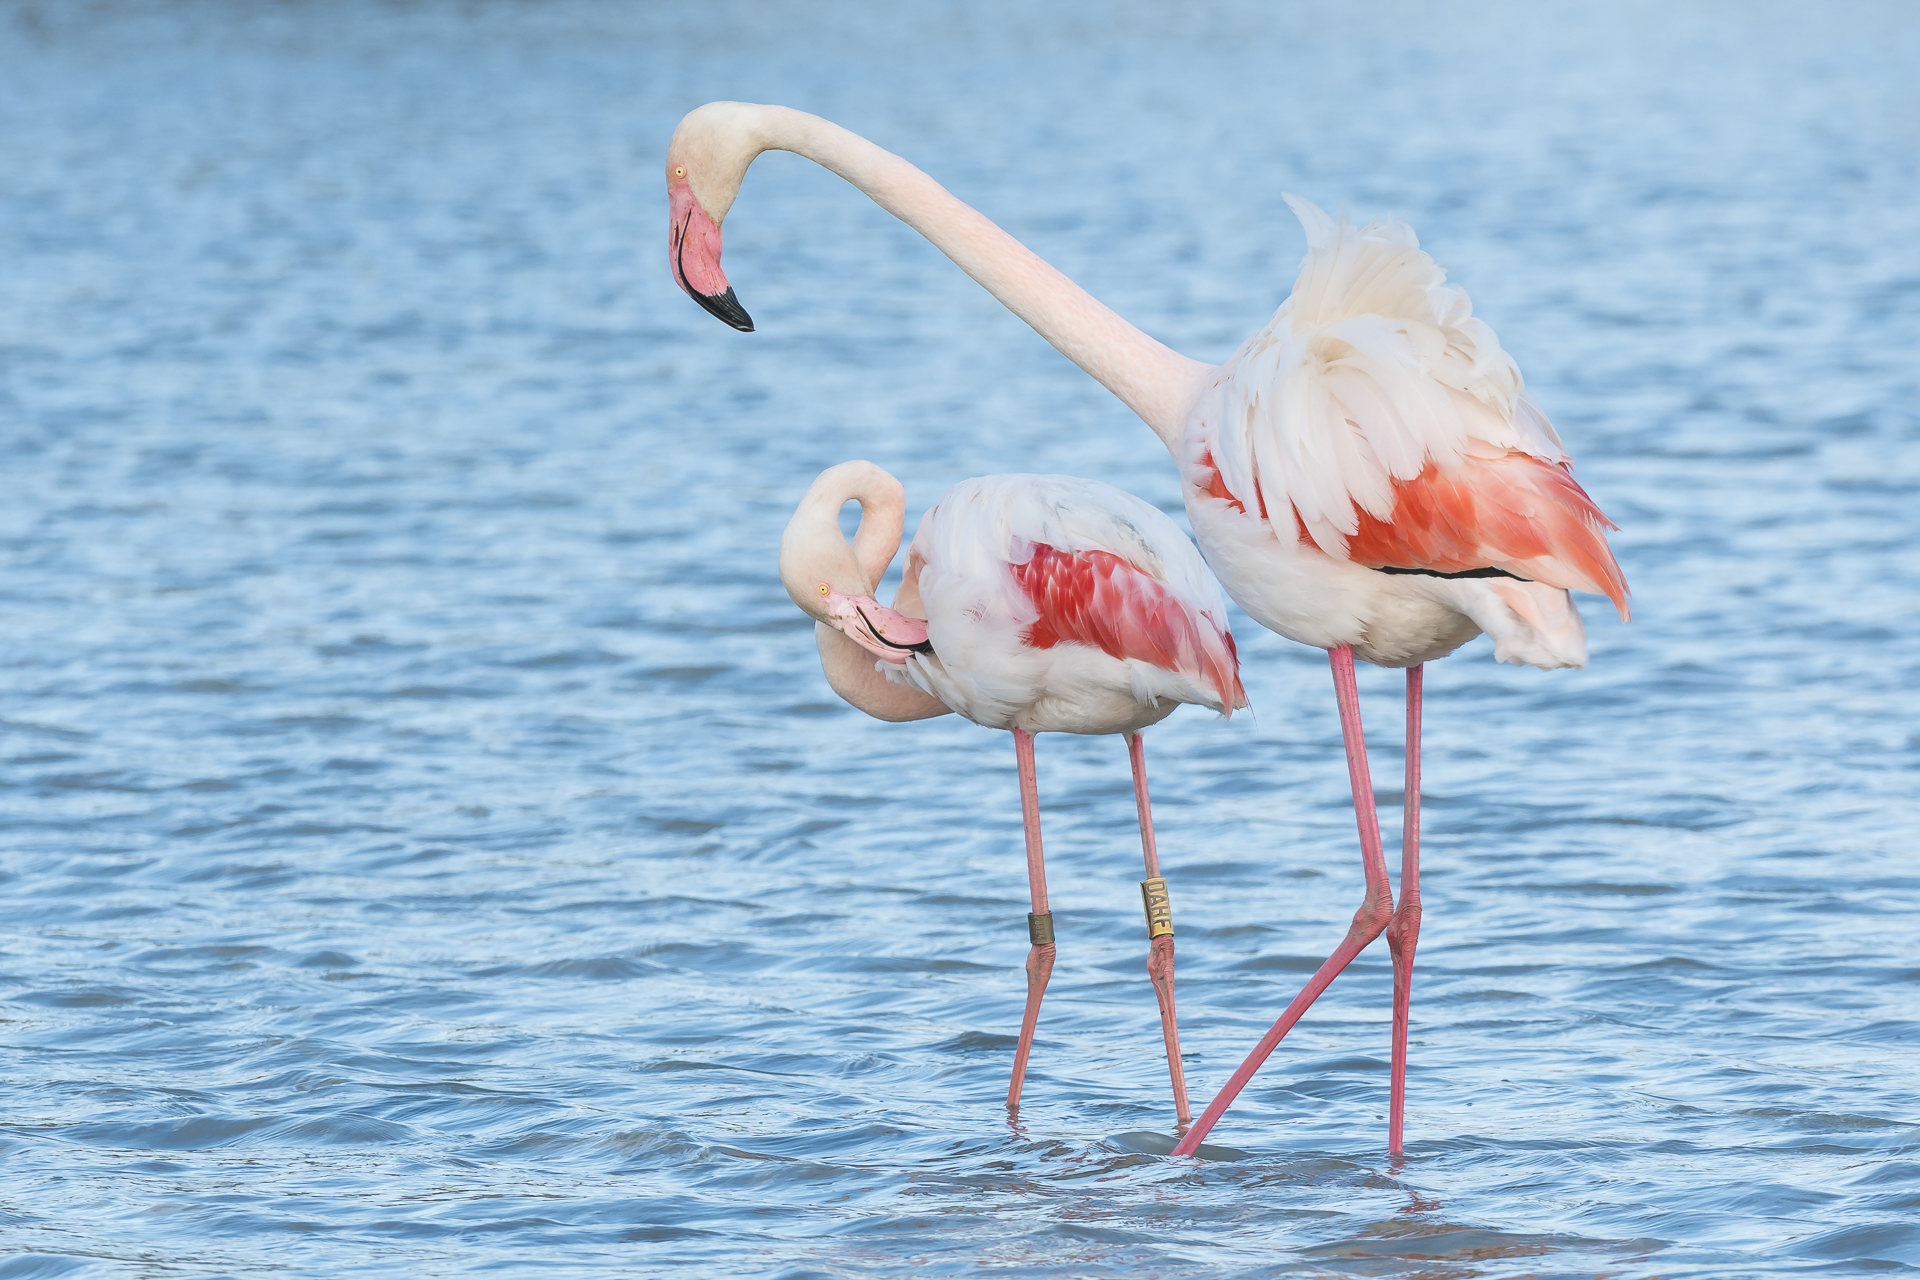 Greater flamingo courtship behavior. Pont-de Gau ornithological reserve, Saintes Maries de la Mer, France.